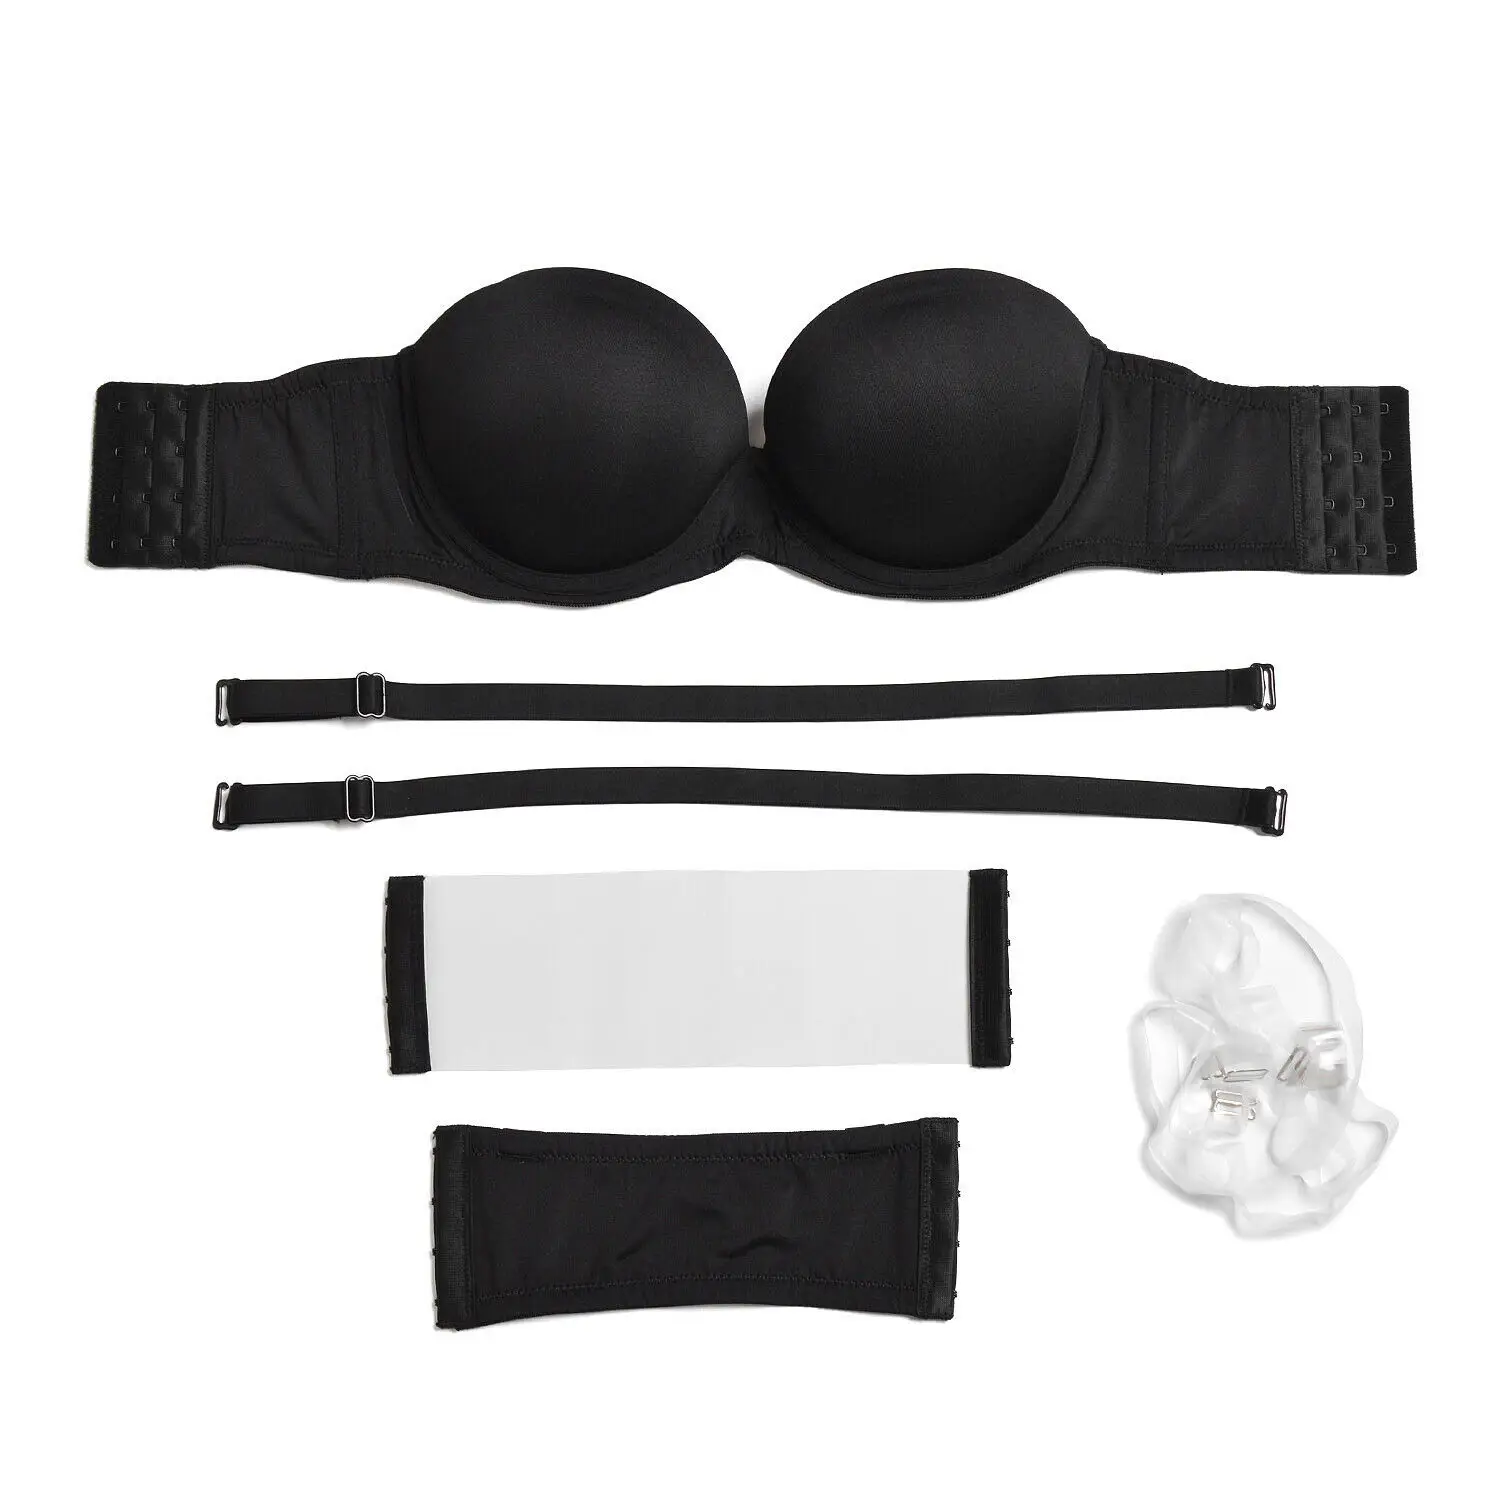 Αγορά Γυναικεία οικειότητα  New Women's Sexy Bras Padded Underwire  Underwear Push Up Bra 1/2 Cups Size 30 32 34 36 38 40 42 44 A B C D DD E  DDD F Cups